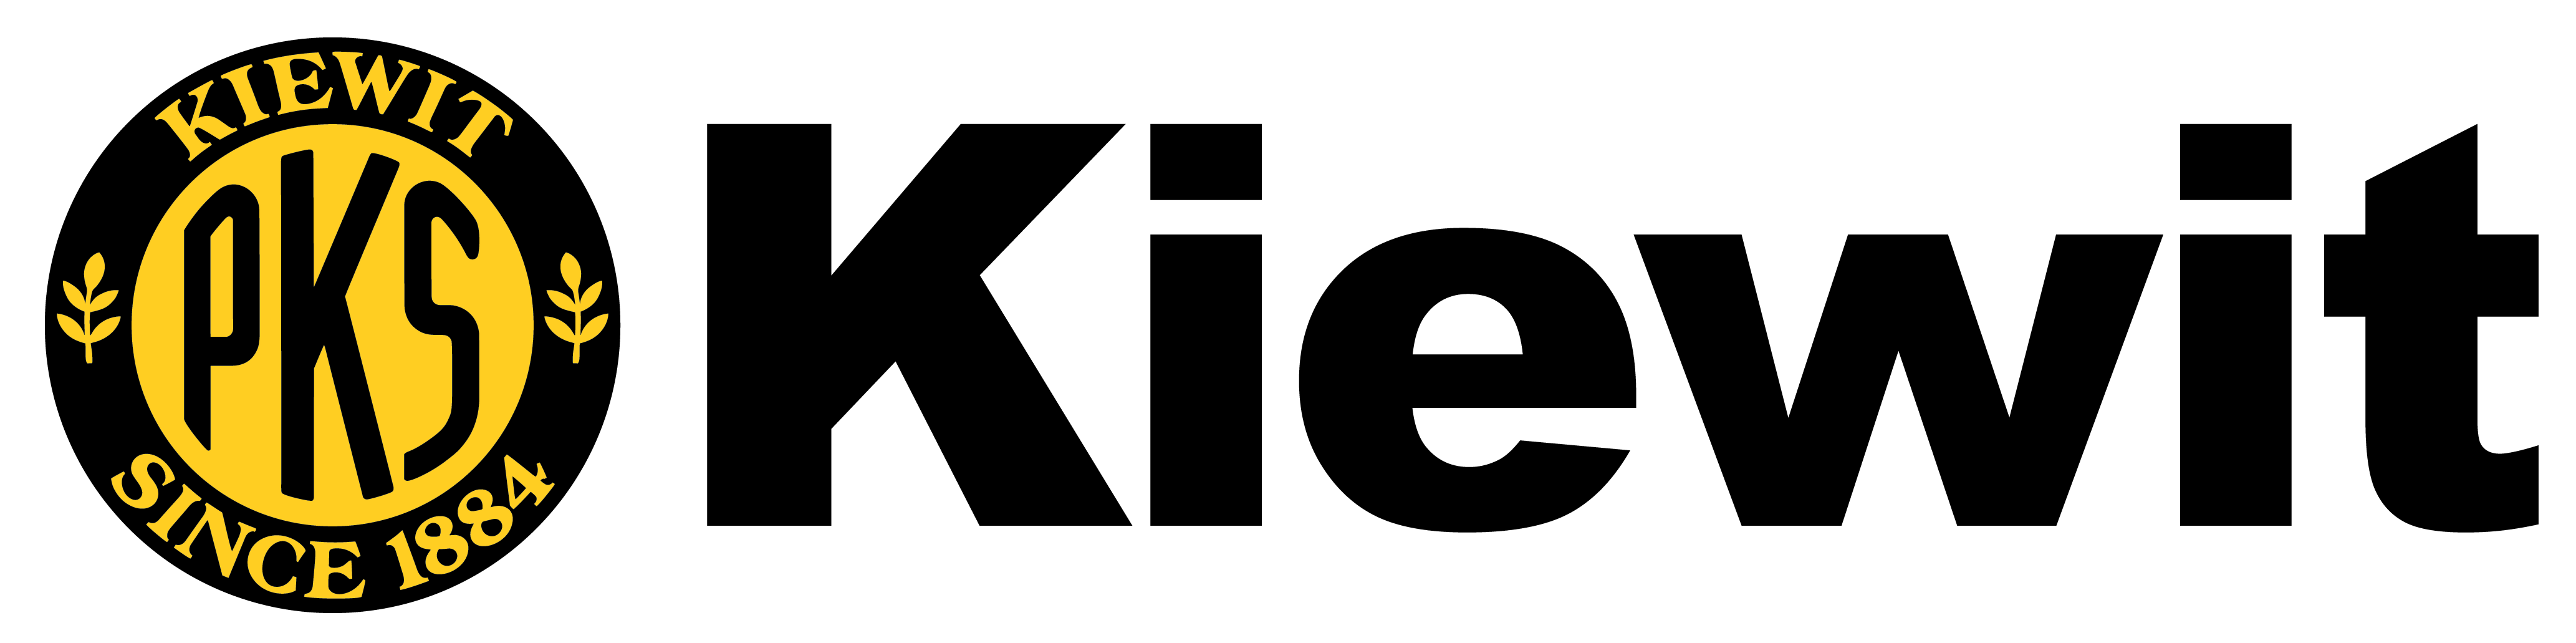 Kiewit Logo.png detail image